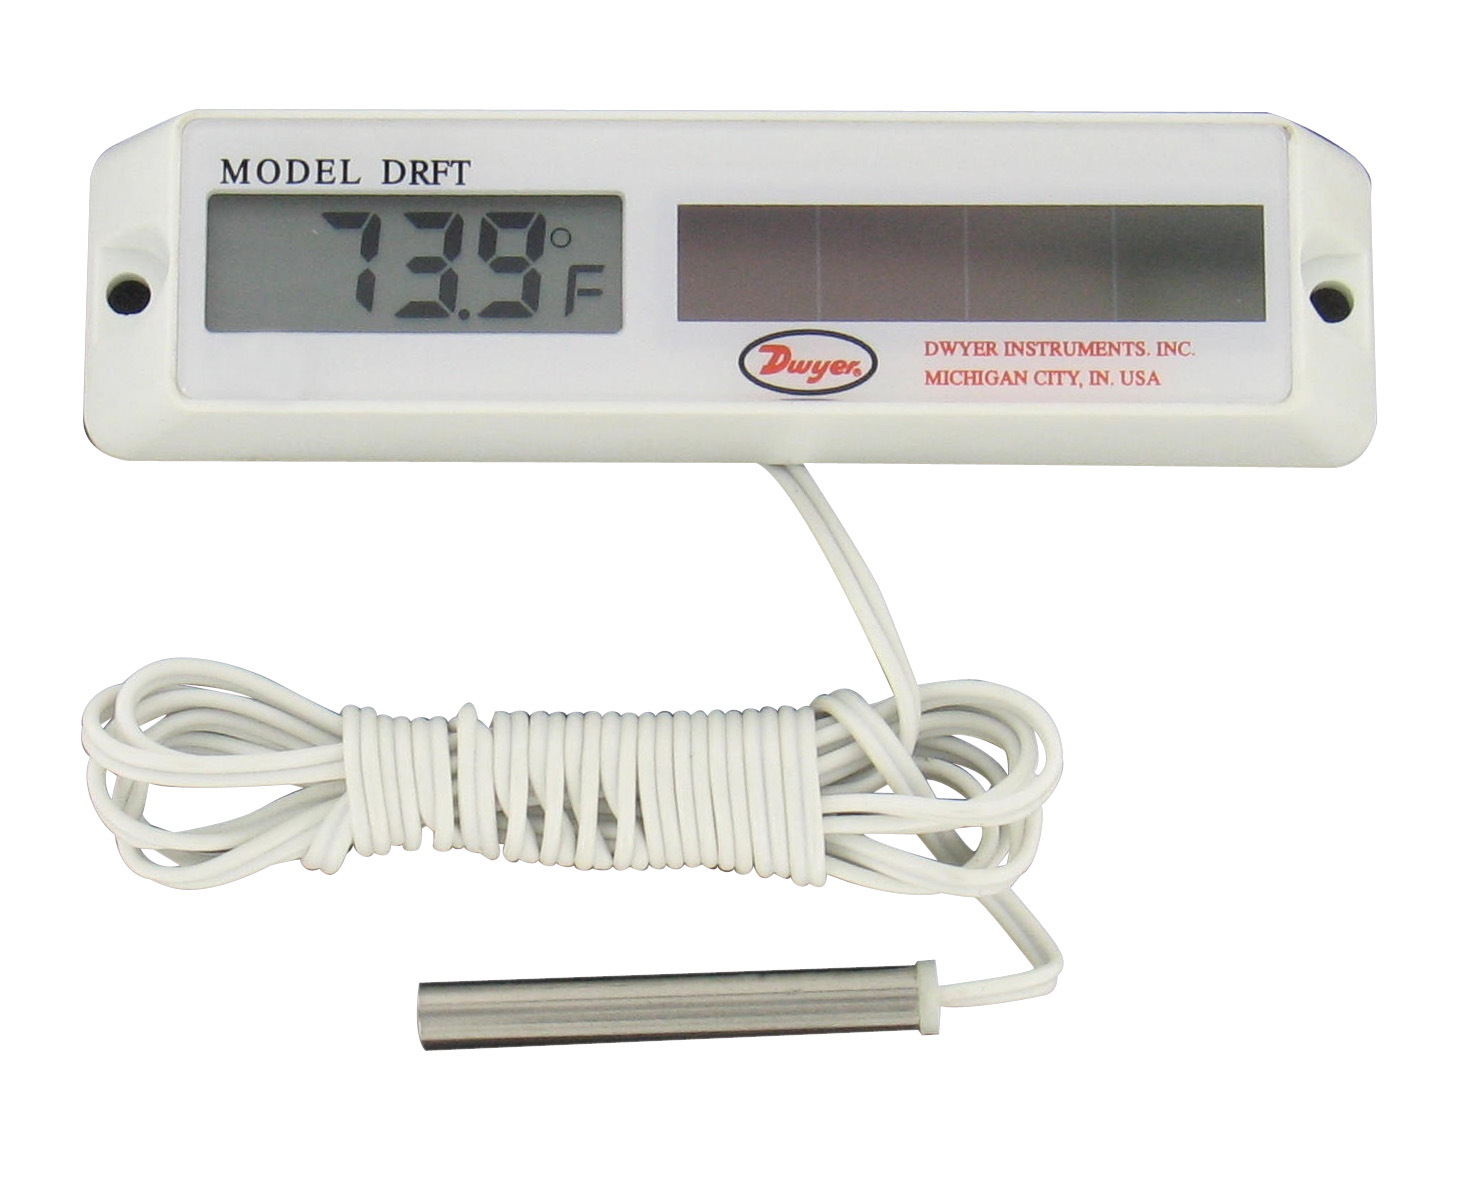 Цифровой термометр на солнечных батареях для рефриджераторов и холодильников Dwyer DRFT